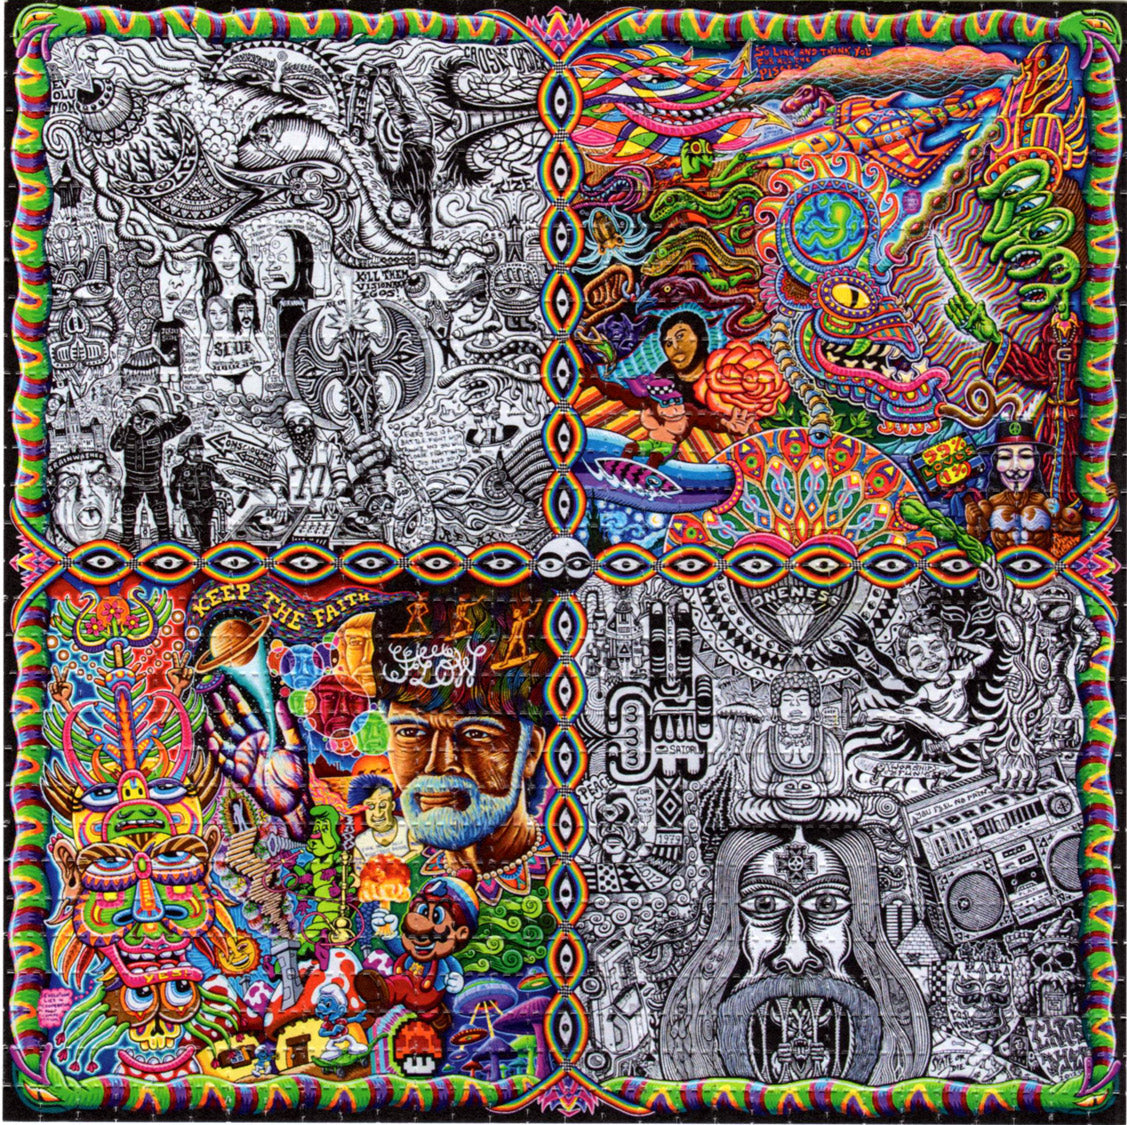 Chaos Culture by Chris Dyer LSD blotter art print